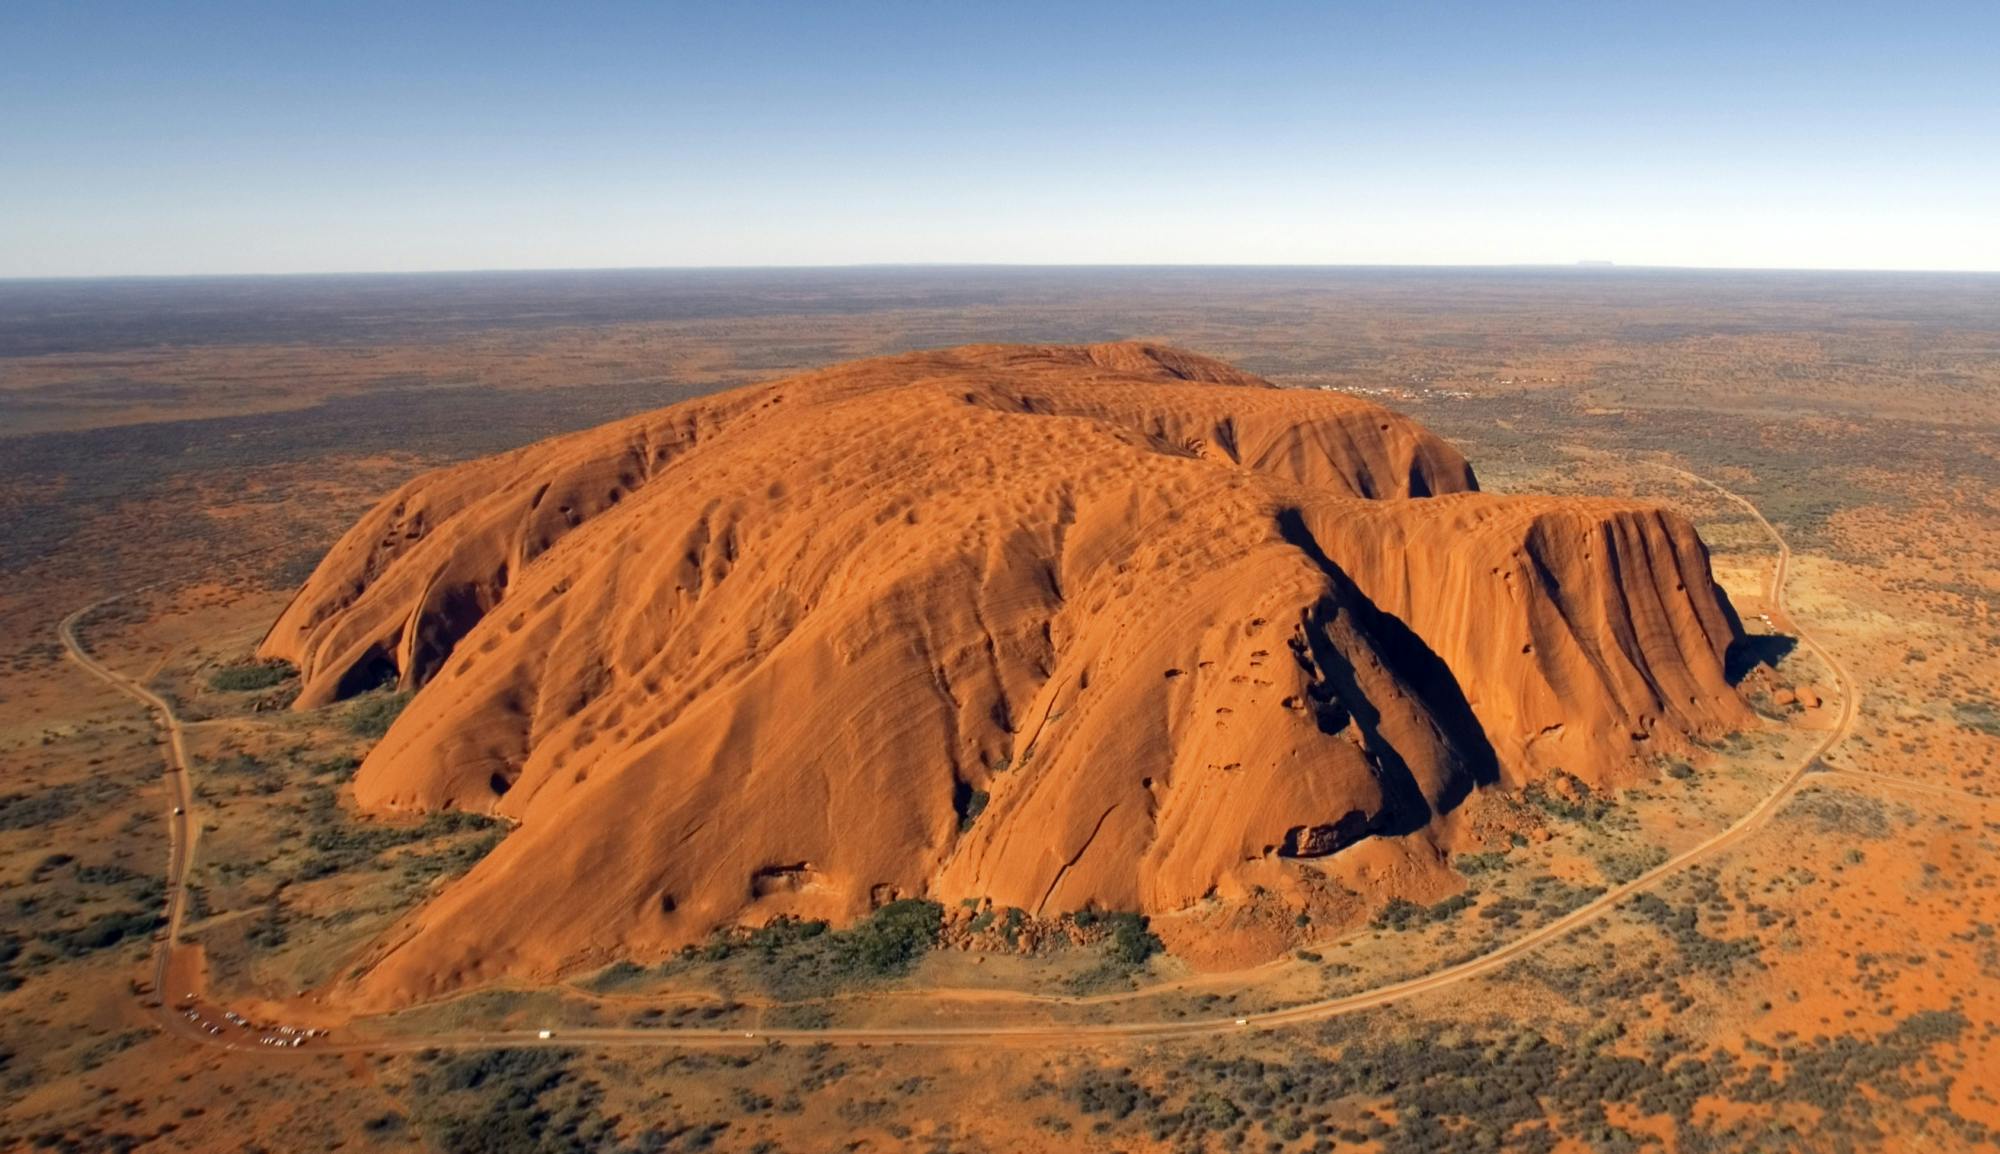 Uluru Rock 20 minuten durende vliegtuigvlucht met vaste vleugels